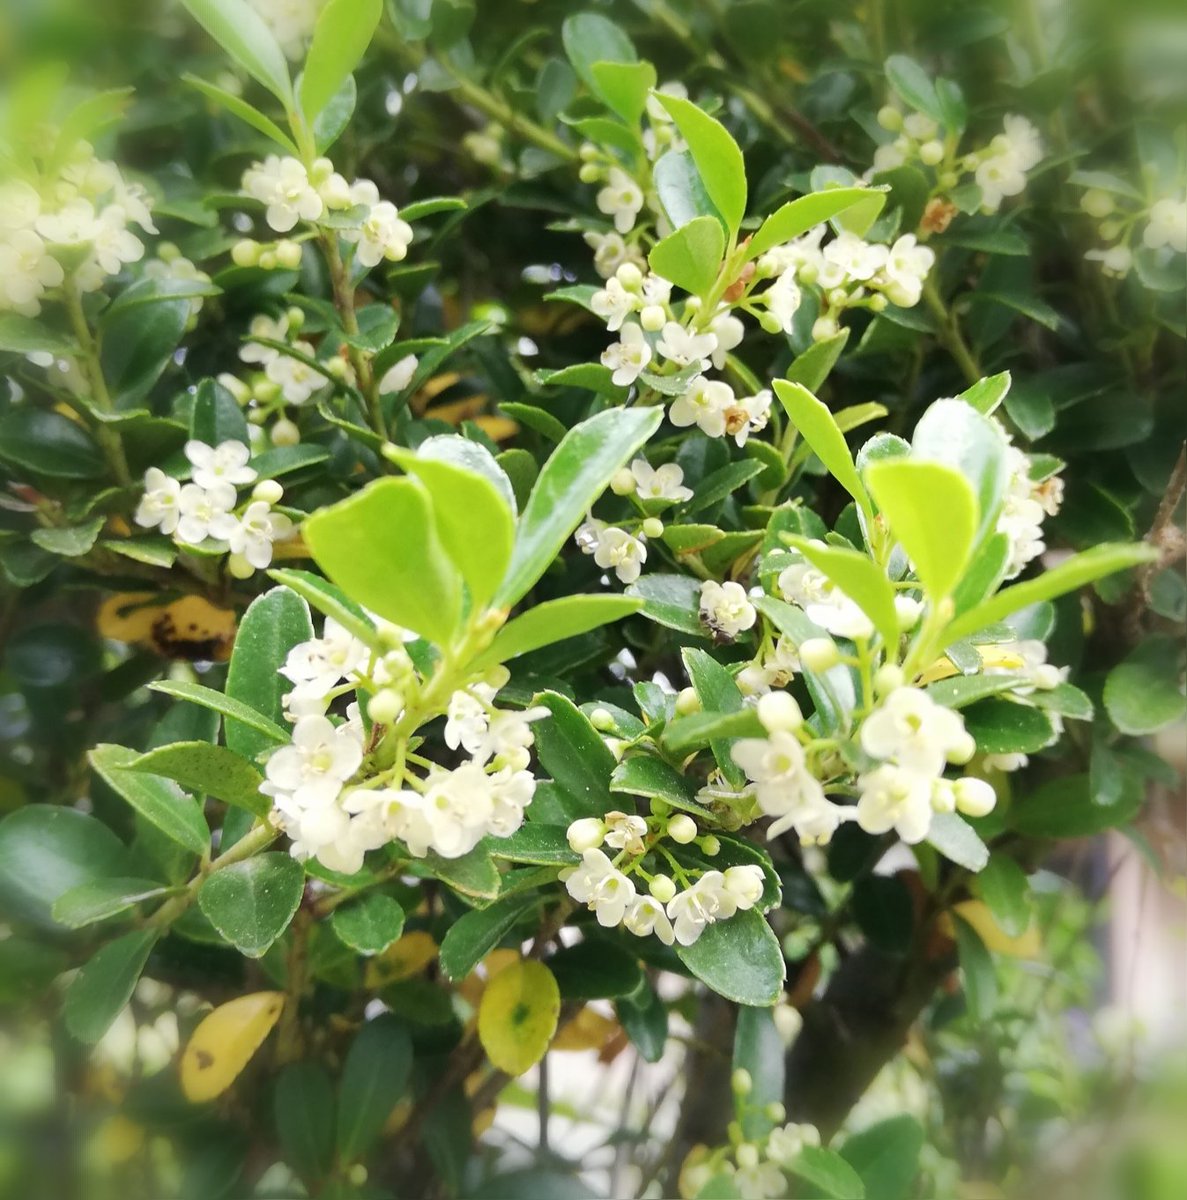 Twitter वर Kazuchan Cocone 庭のツゲの木に花が咲いている 小さな小さな白い花 よく見るとかわいいよ T Co 63ymgbjmqa Twitter